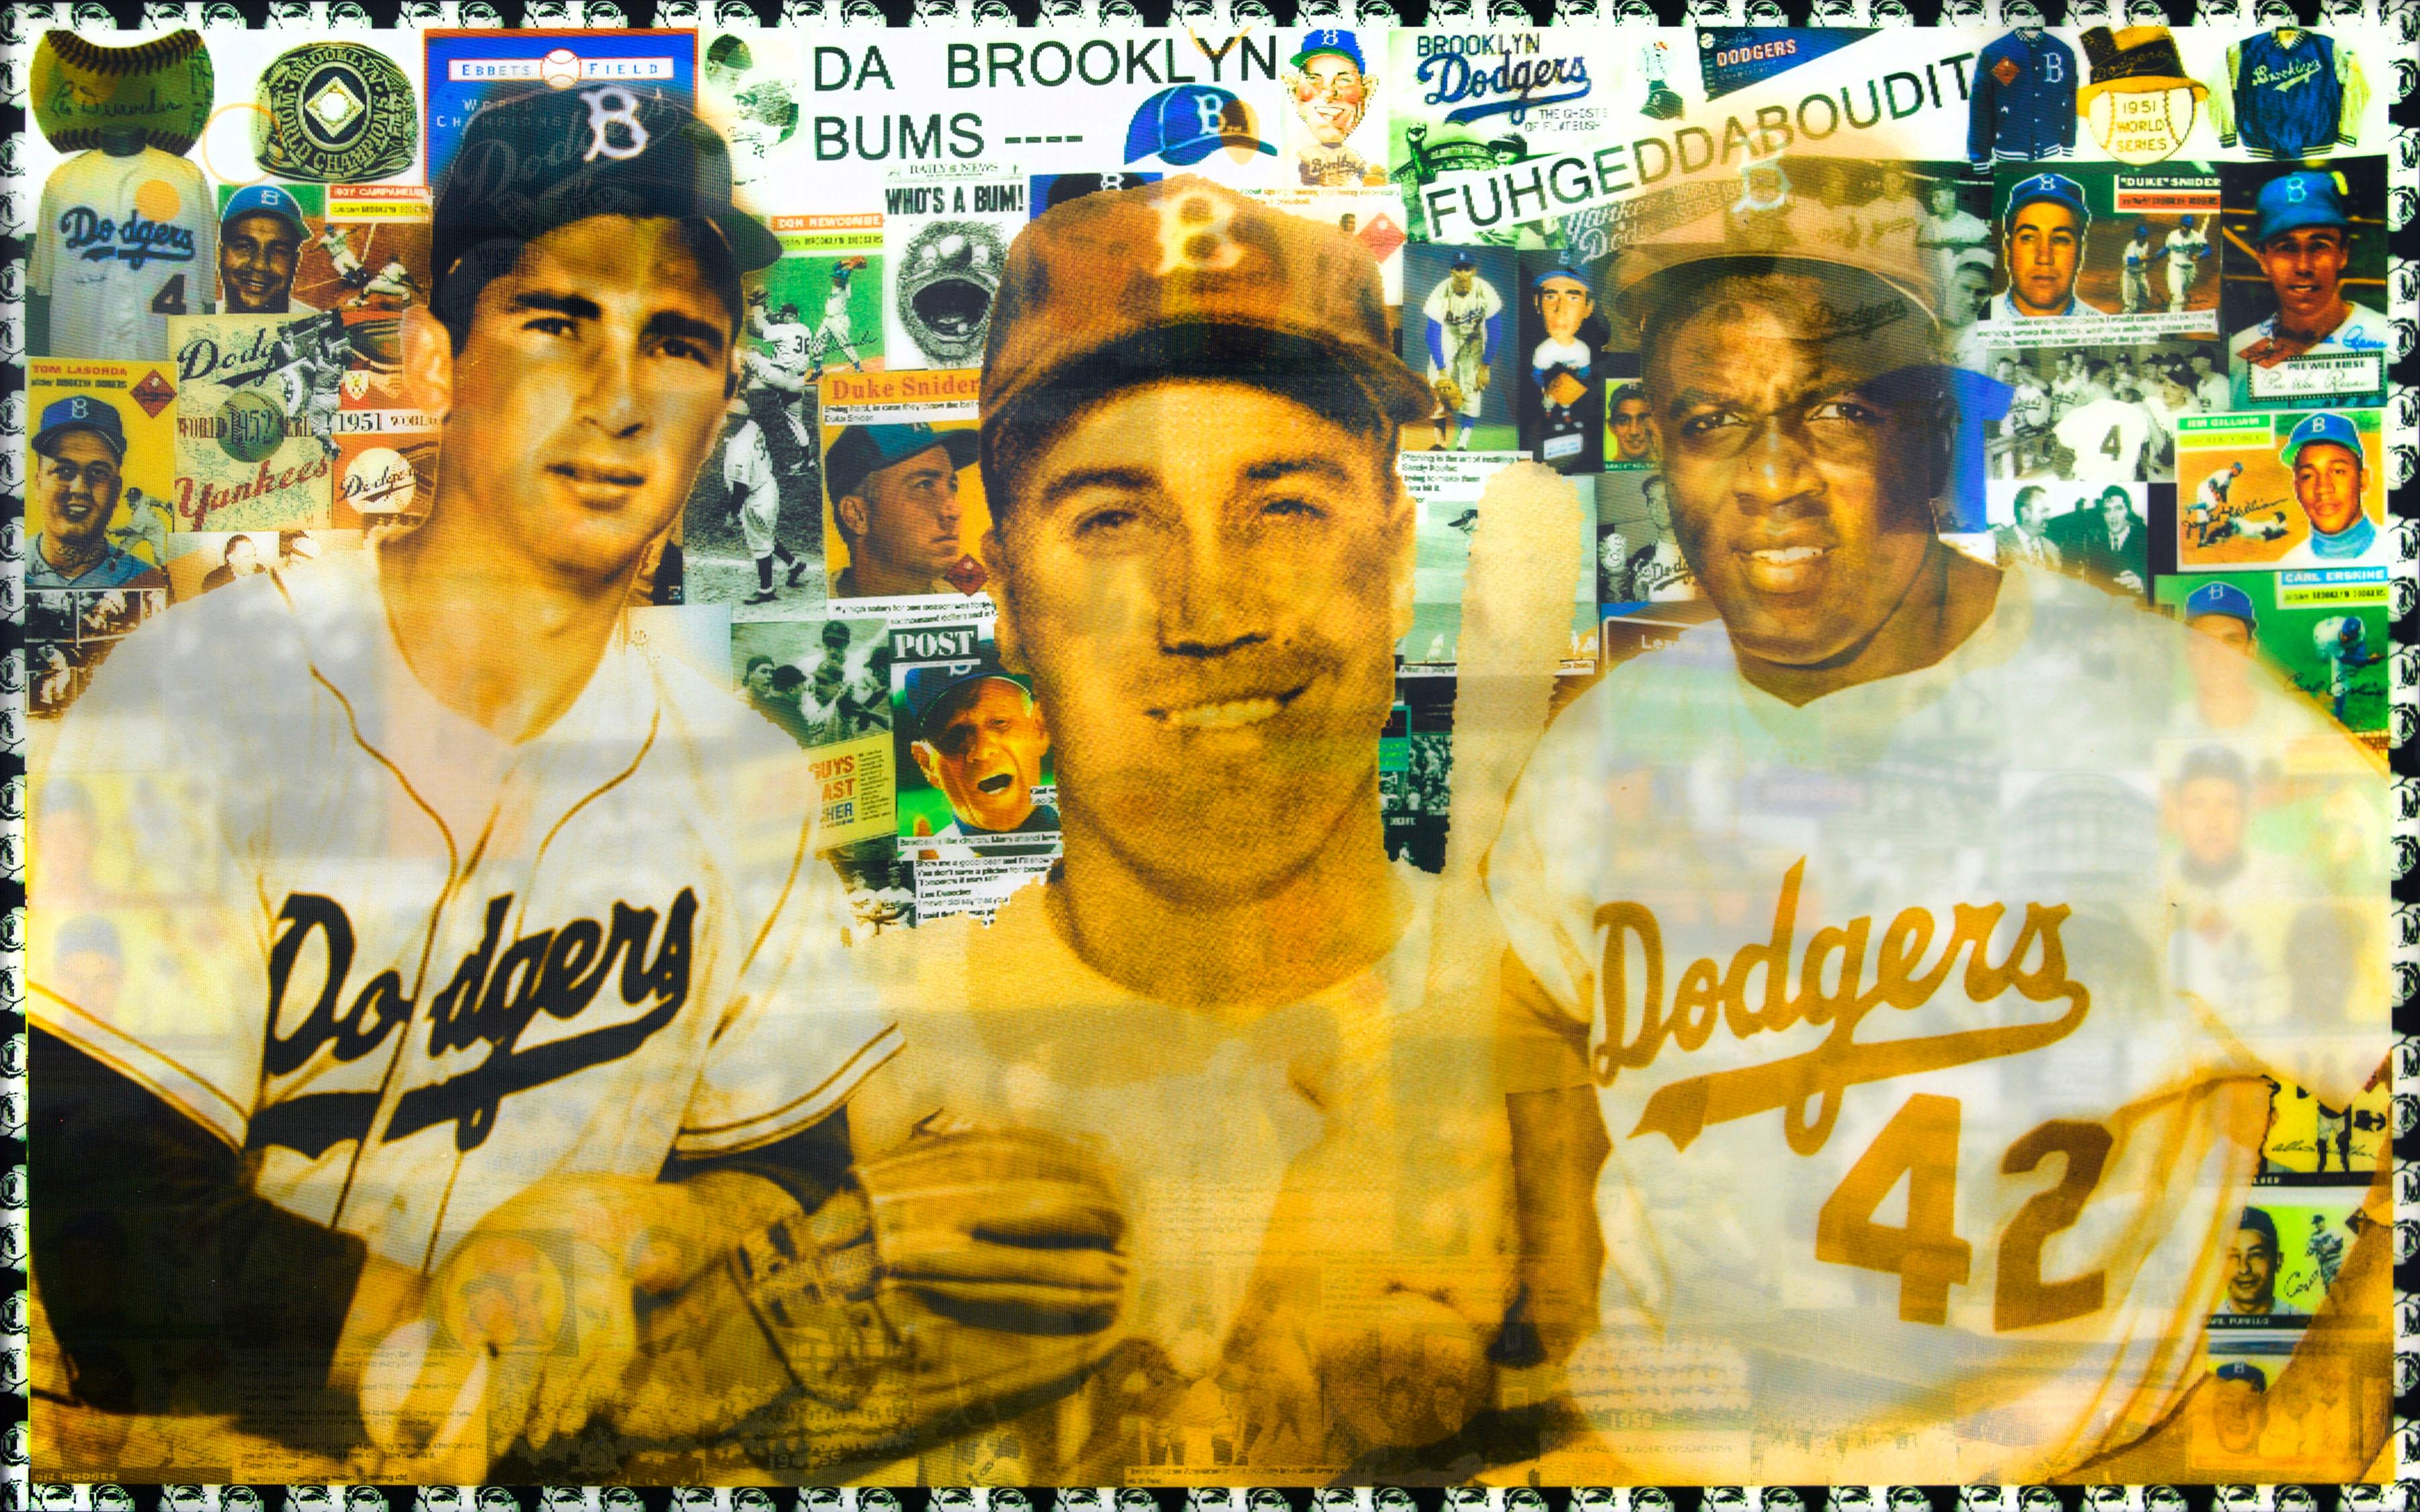 Dodgers Da Brooklyn Bums, Impression lenticulaire de DJ Leon, 36 x 24 pouces